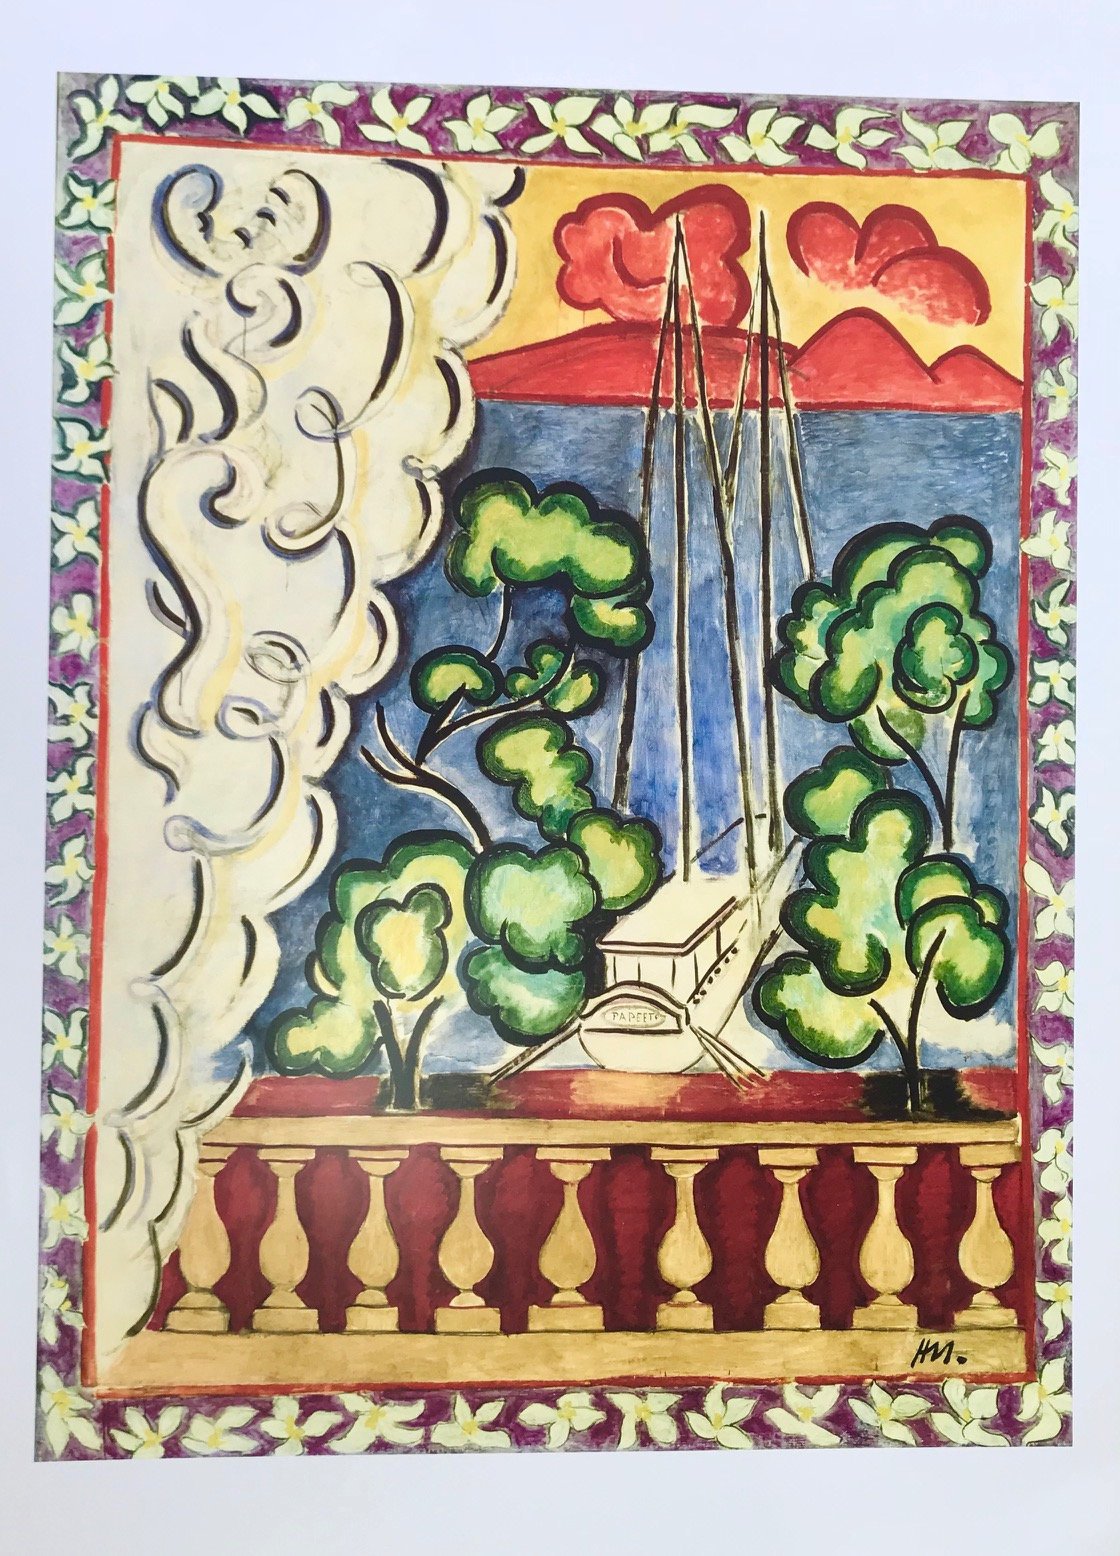 Matisse Poster "Papeete"